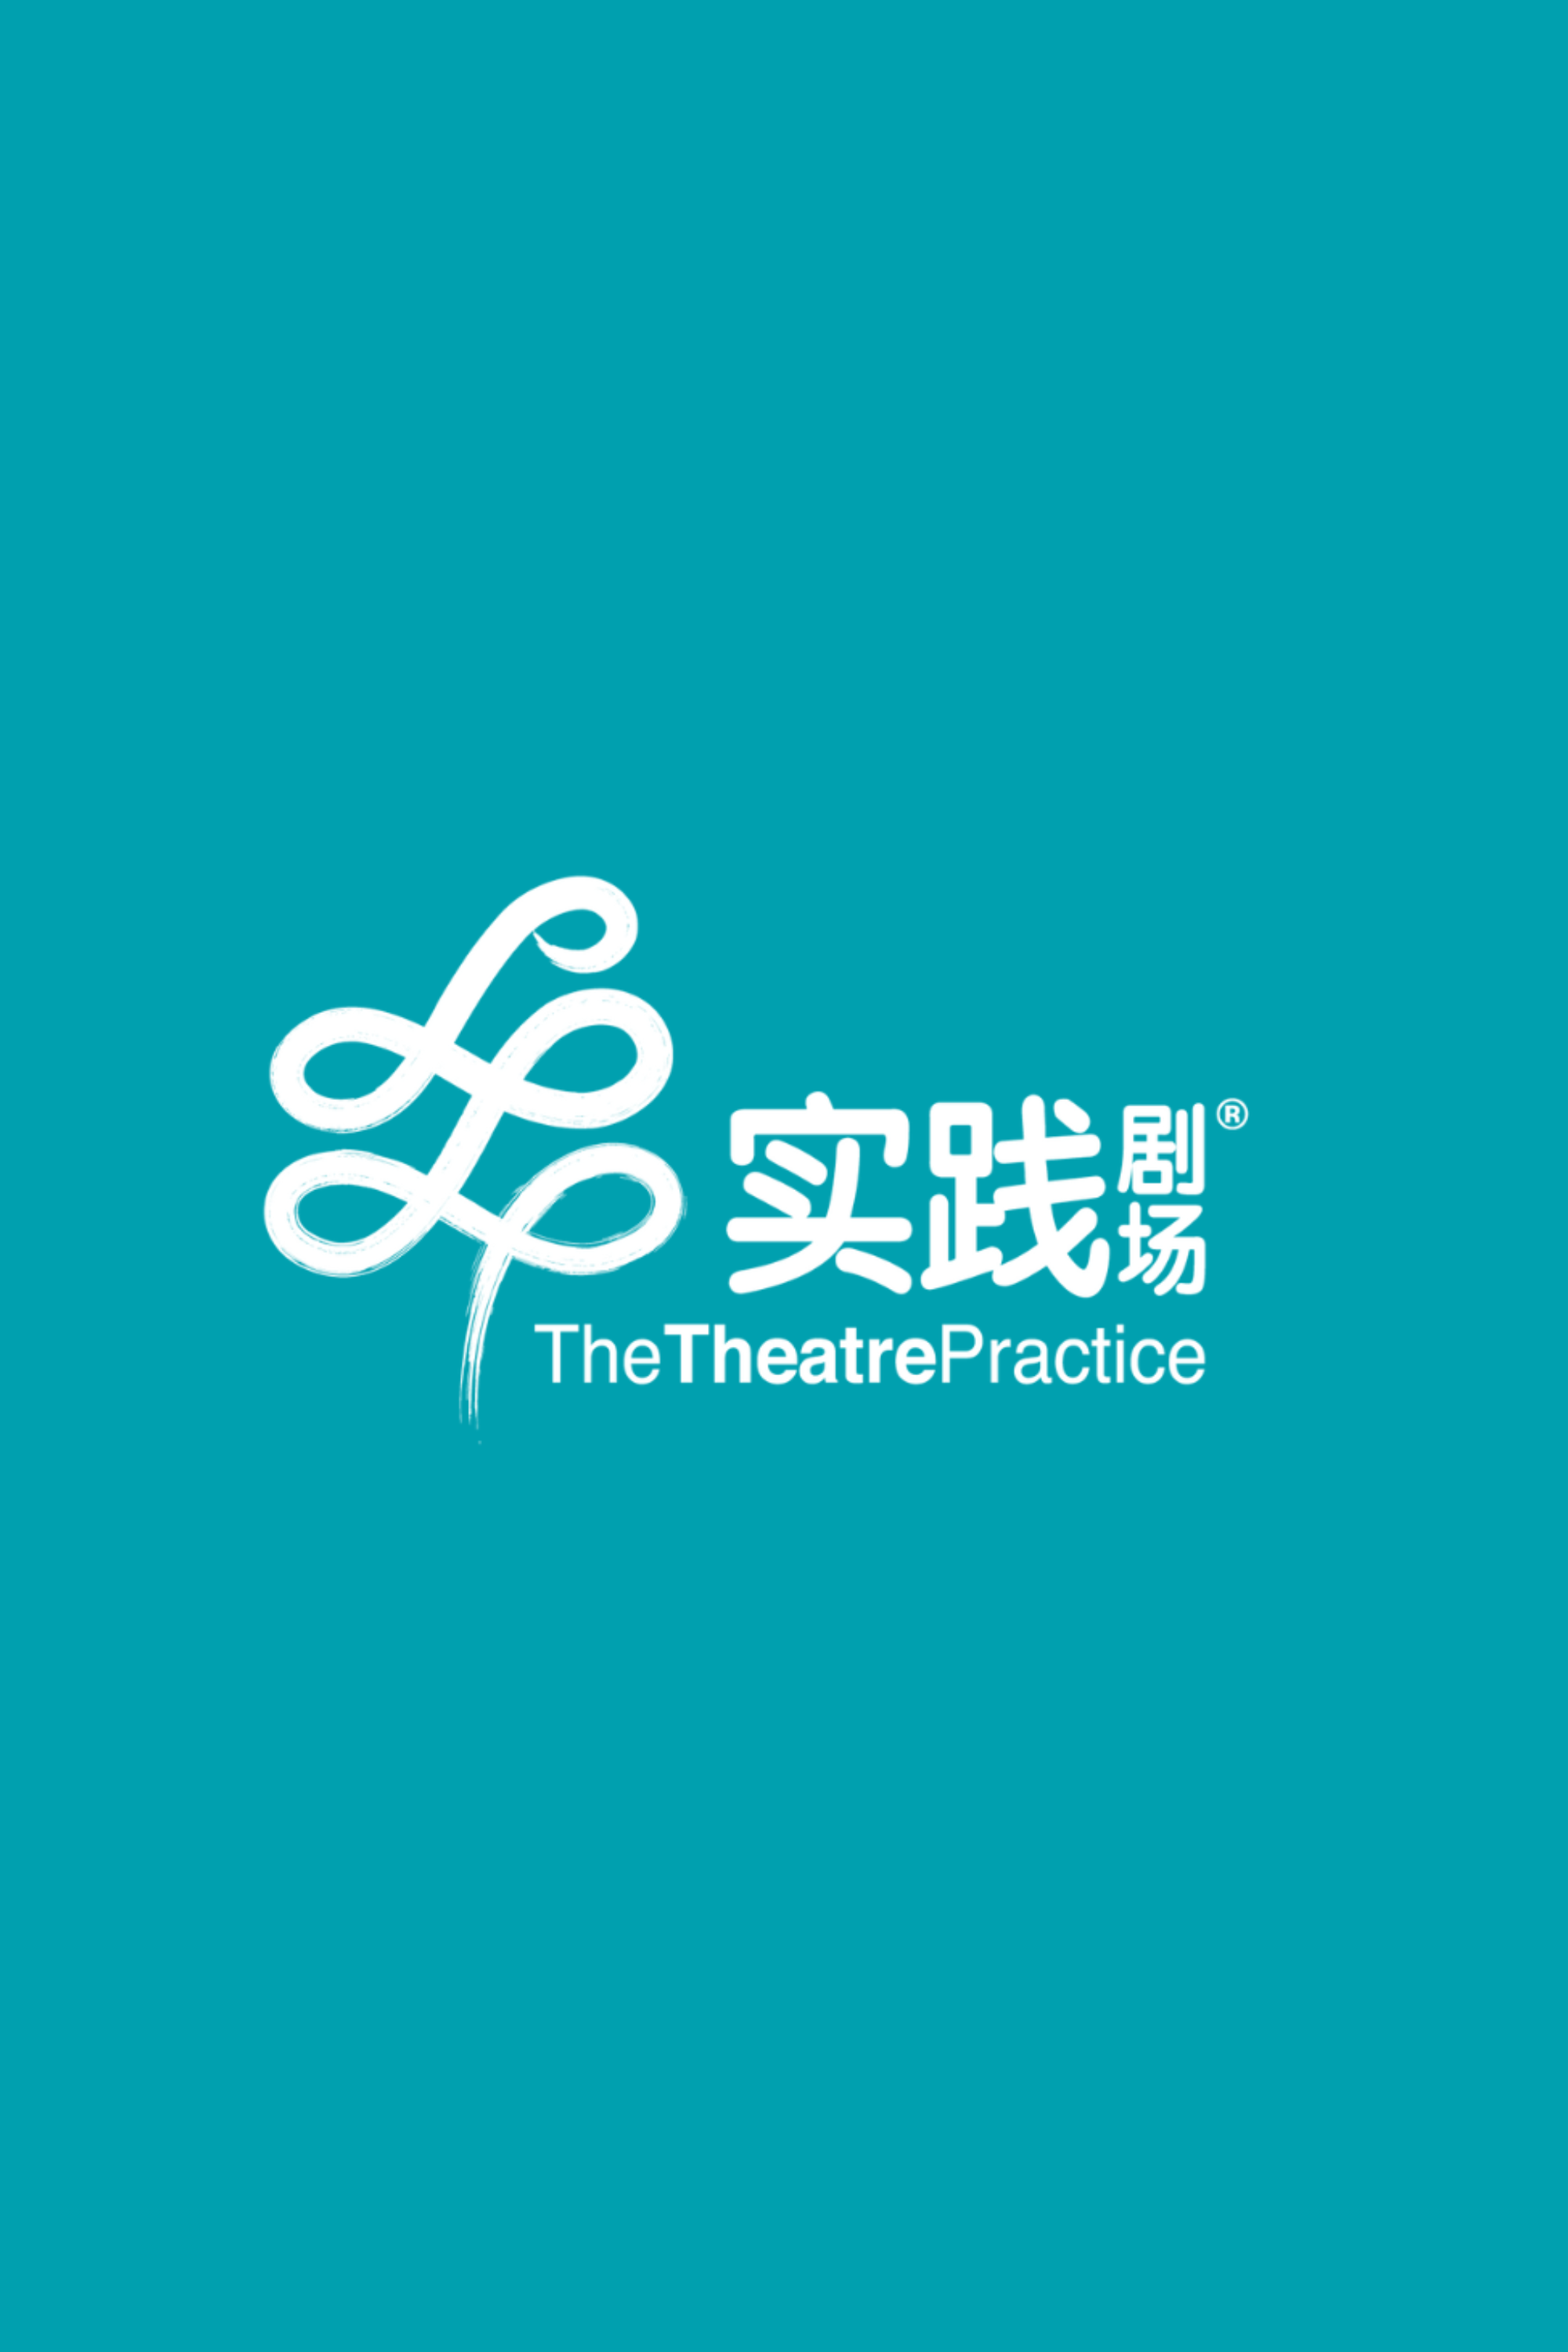 The Theatre Practice